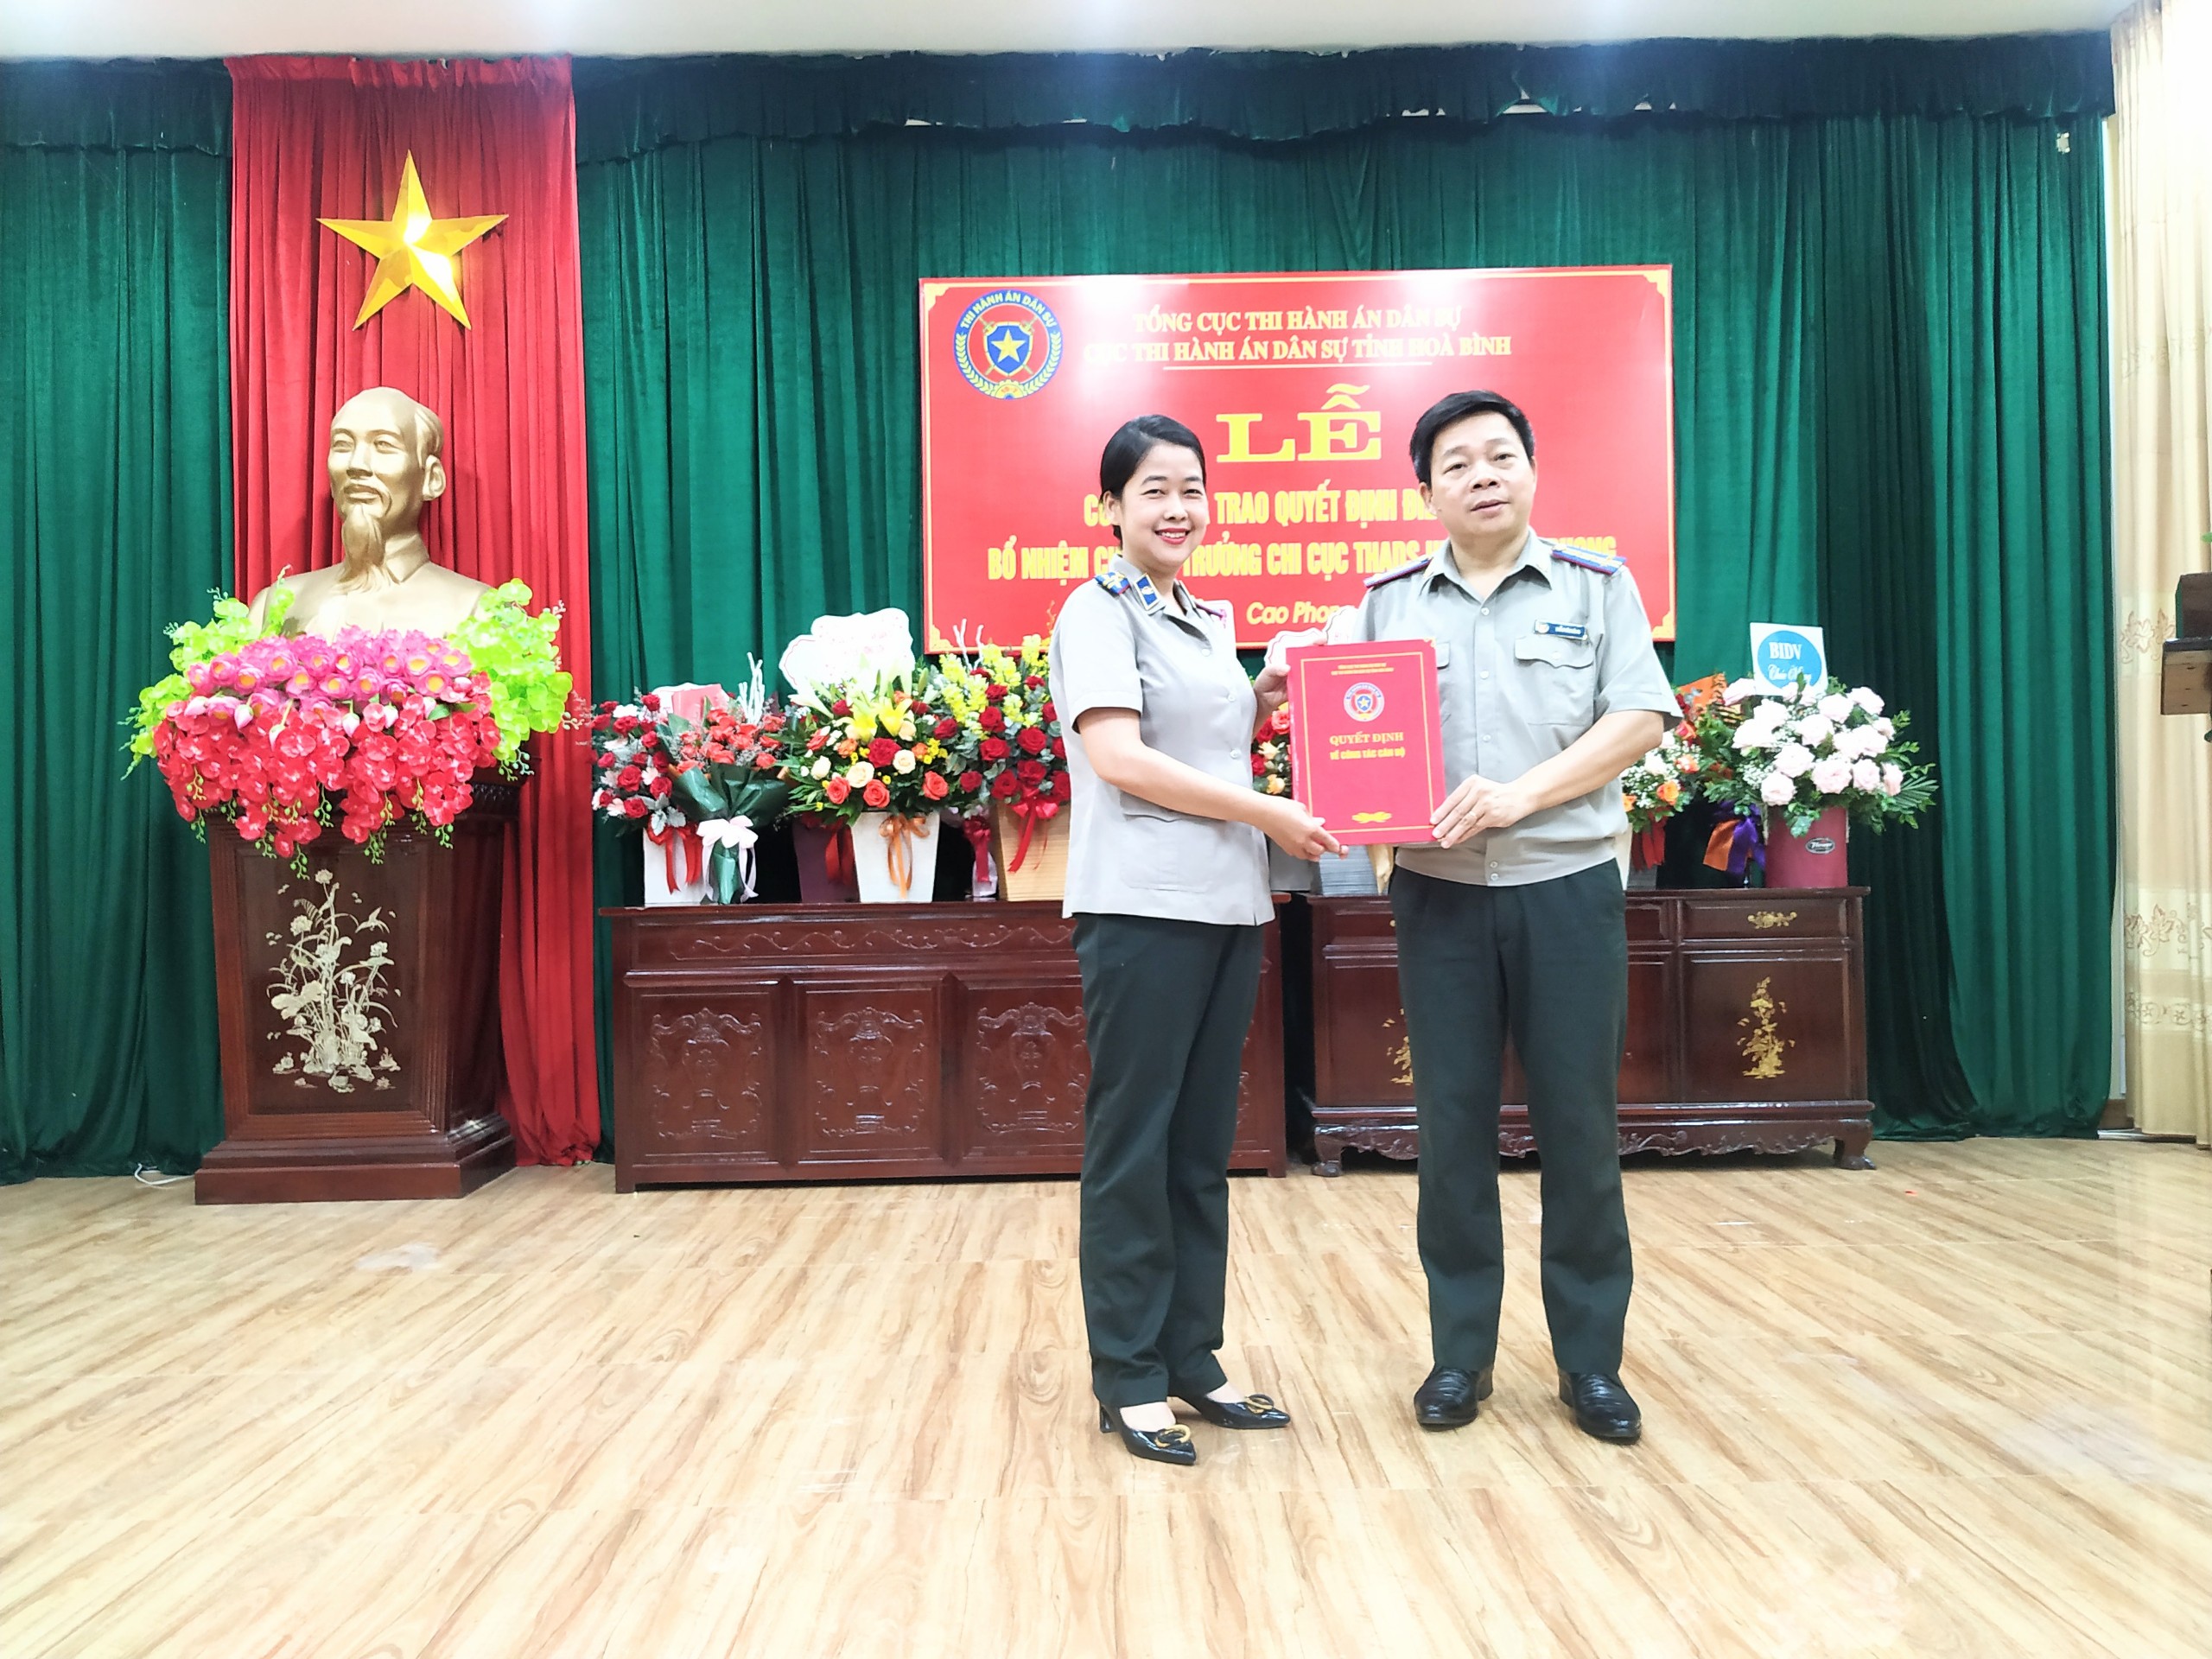 Cục Thi hành án dân sự tỉnh Hòa Bình tổ chức Lễ công bố, trao Quyết định điều động, bổ nhiệm Chi cục trưởng Chi cục THADS huyện Cao Phong, tỉnh Hòa Bình